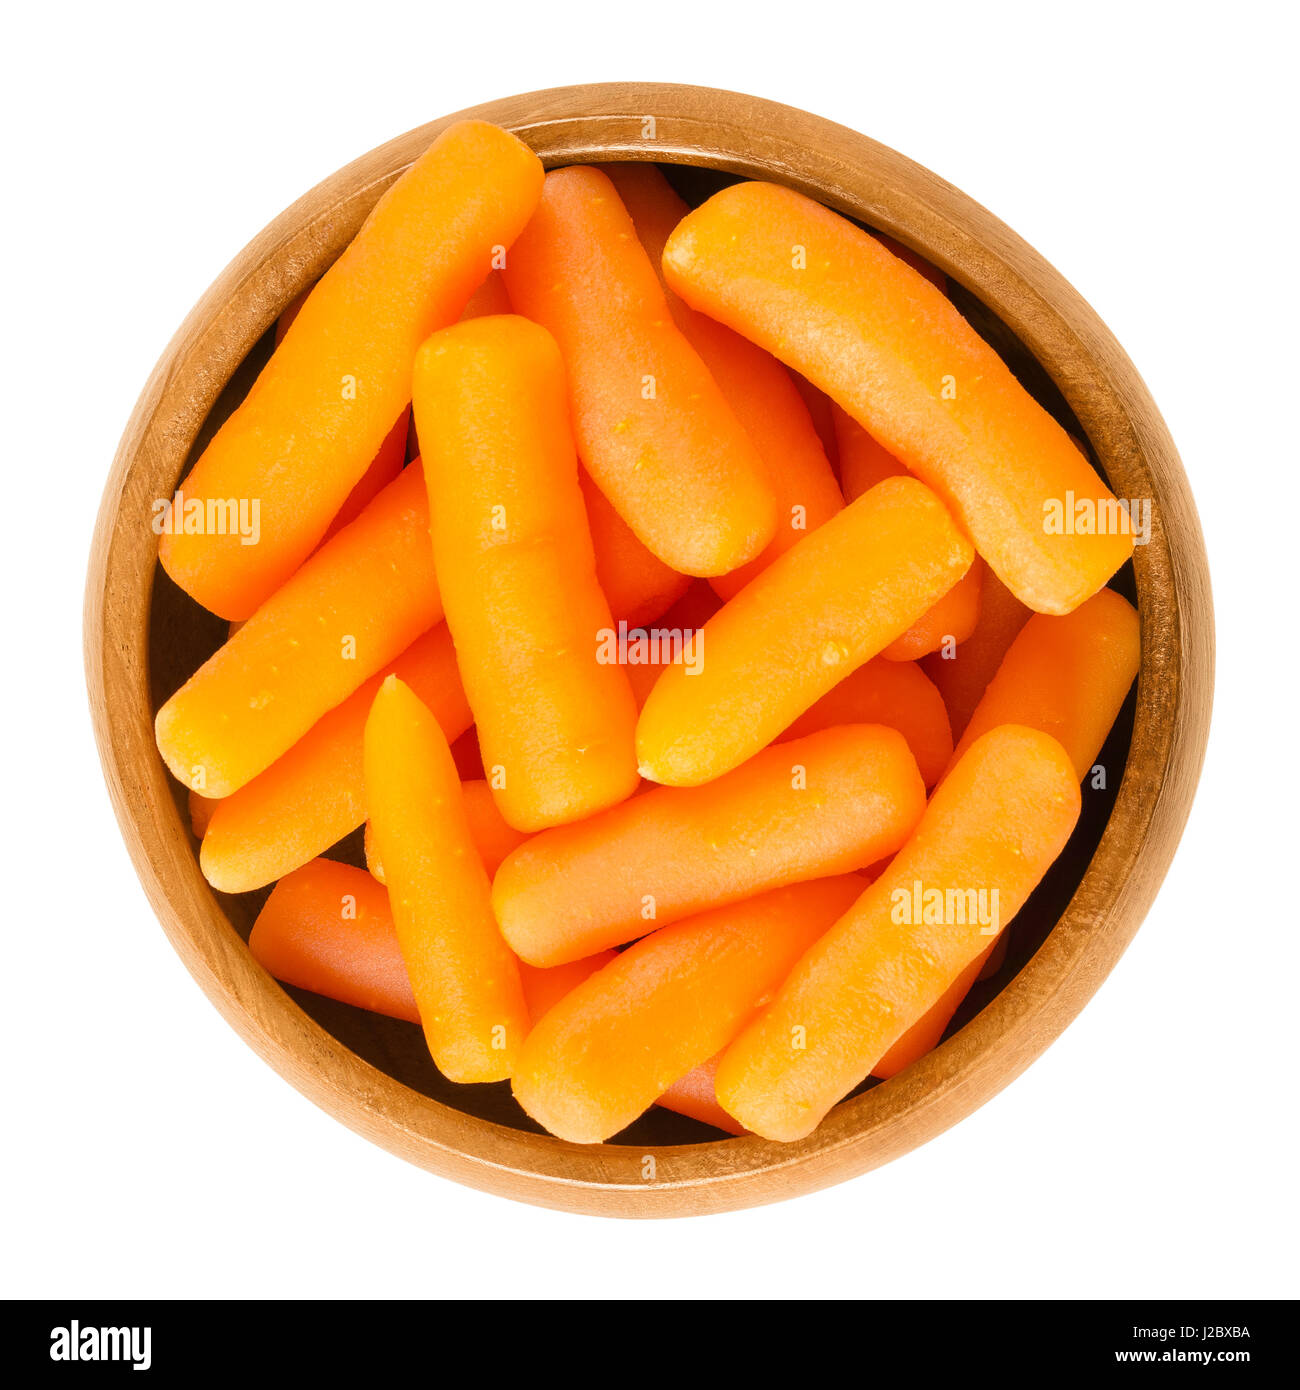 Jeunes carottes dans bol en bois. De petite taille, cuites et immatures les carottes. Légume racine avec la couleur orange. Daucus carota. Macro photo isolées. Banque D'Images